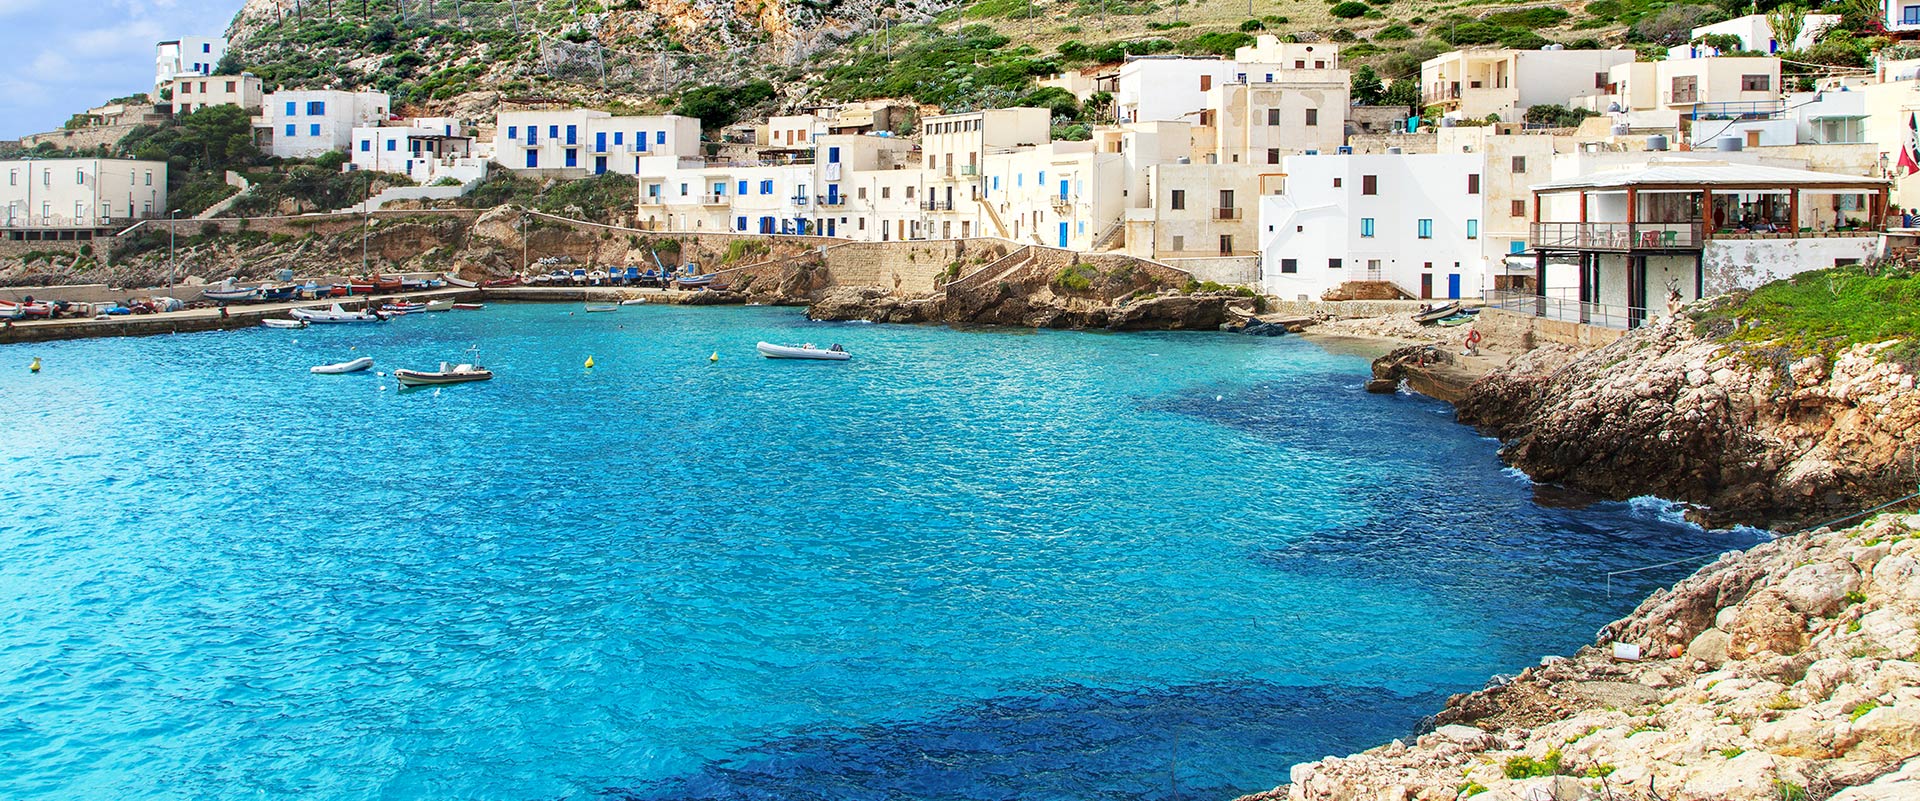 Crociera in catamarano: Isole Egadi, Sicilia